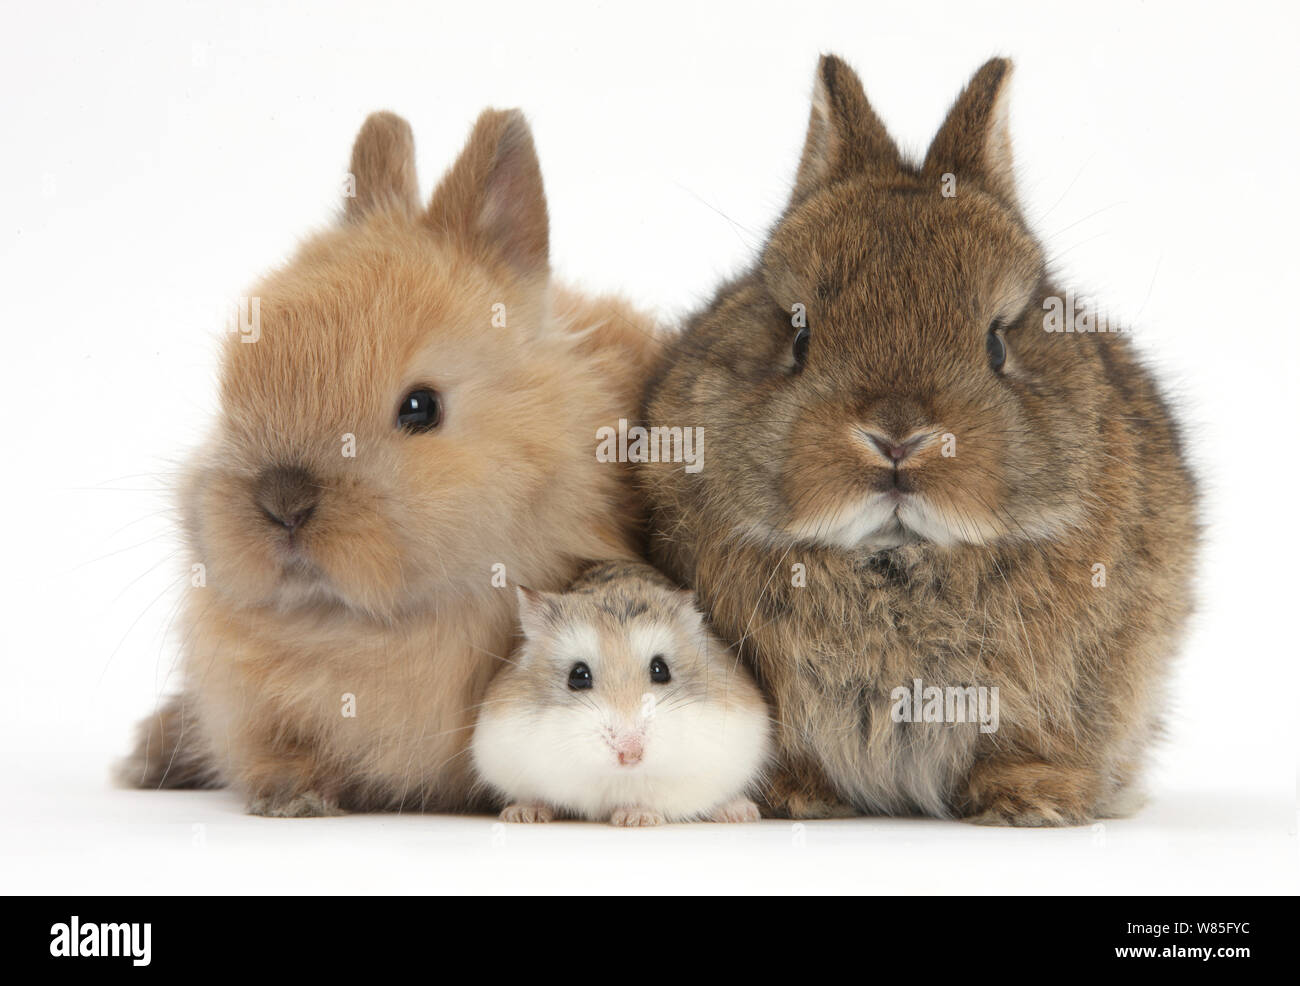 Roborovski Hamster (Phodopus roborovskii) with baby Netherland Dwarf rabbits. Stock Photo